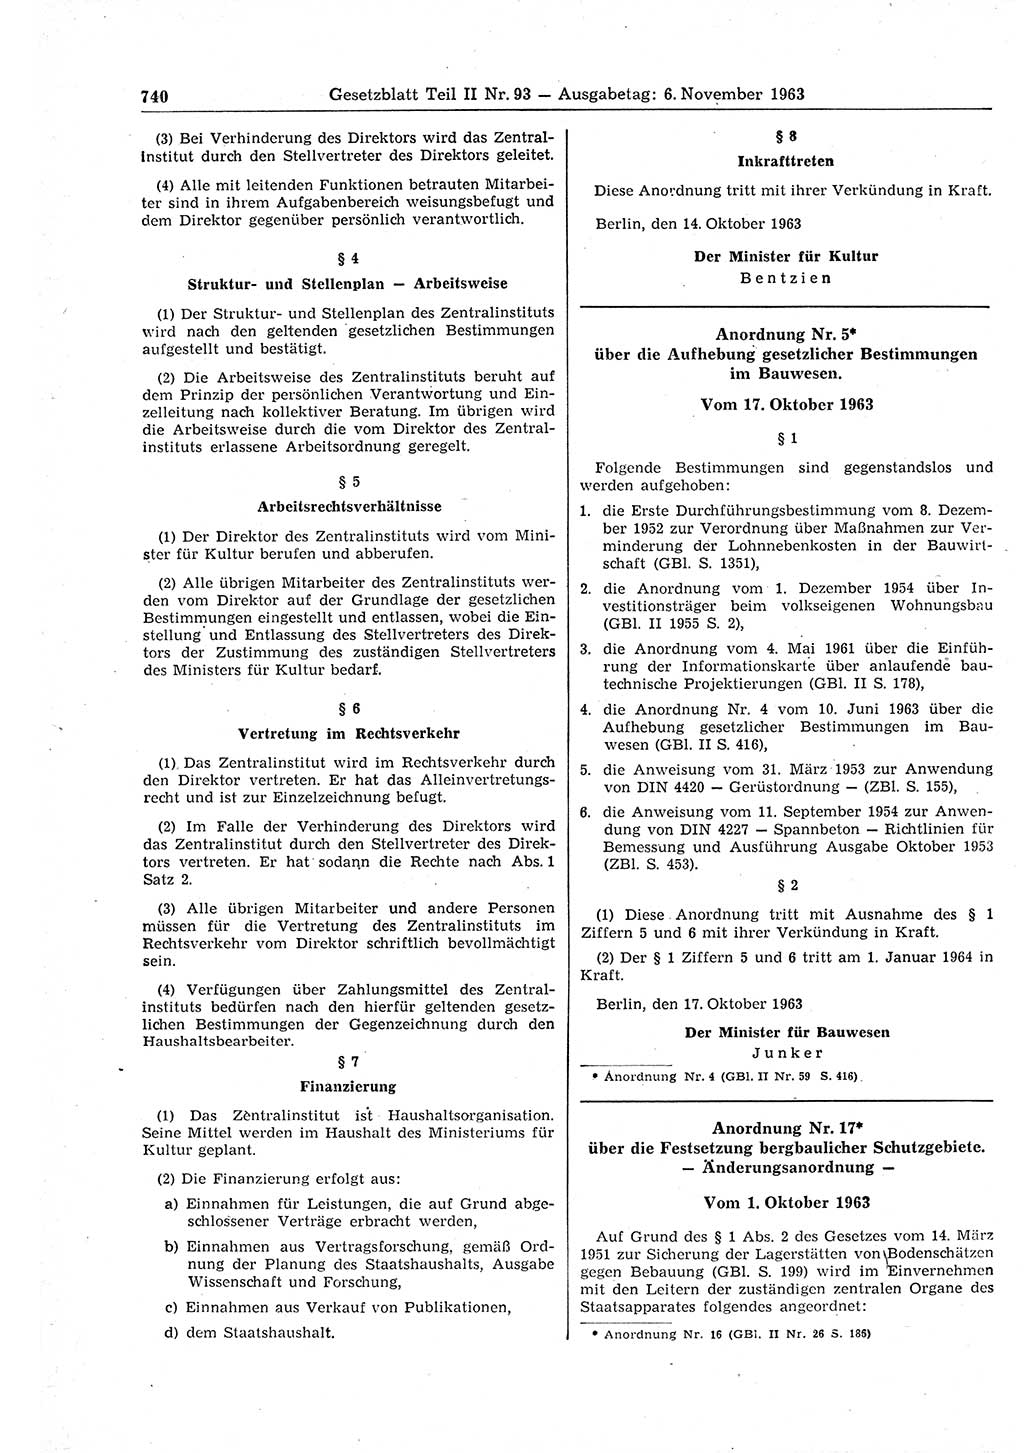 Gesetzblatt (GBl.) der Deutschen Demokratischen Republik (DDR) Teil ⅠⅠ 1963, Seite 740 (GBl. DDR ⅠⅠ 1963, S. 740)